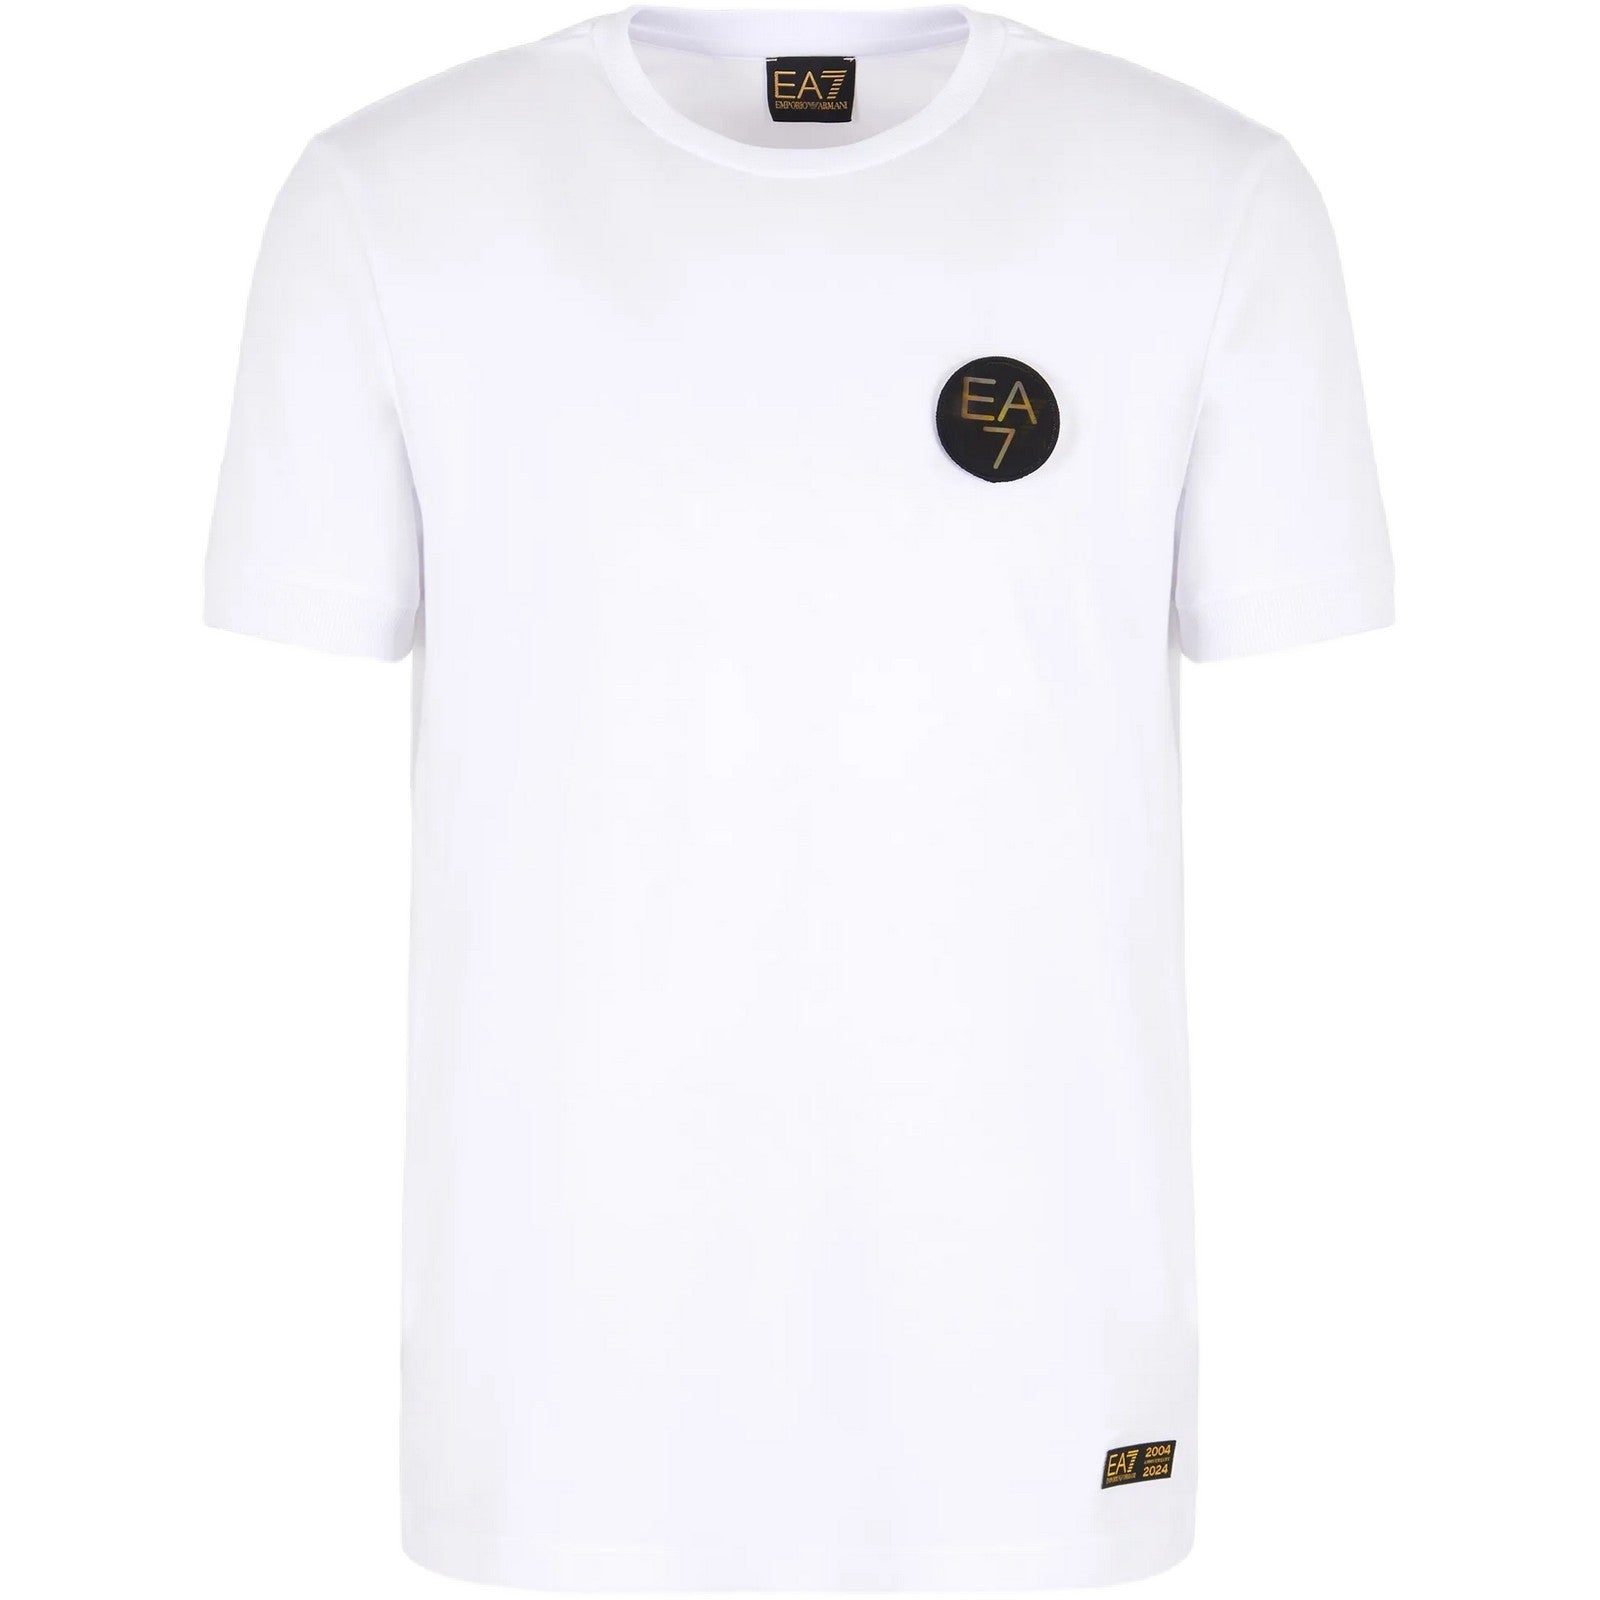 T-shirt Uomo Emporio Armani - T-Shirt - Bianco